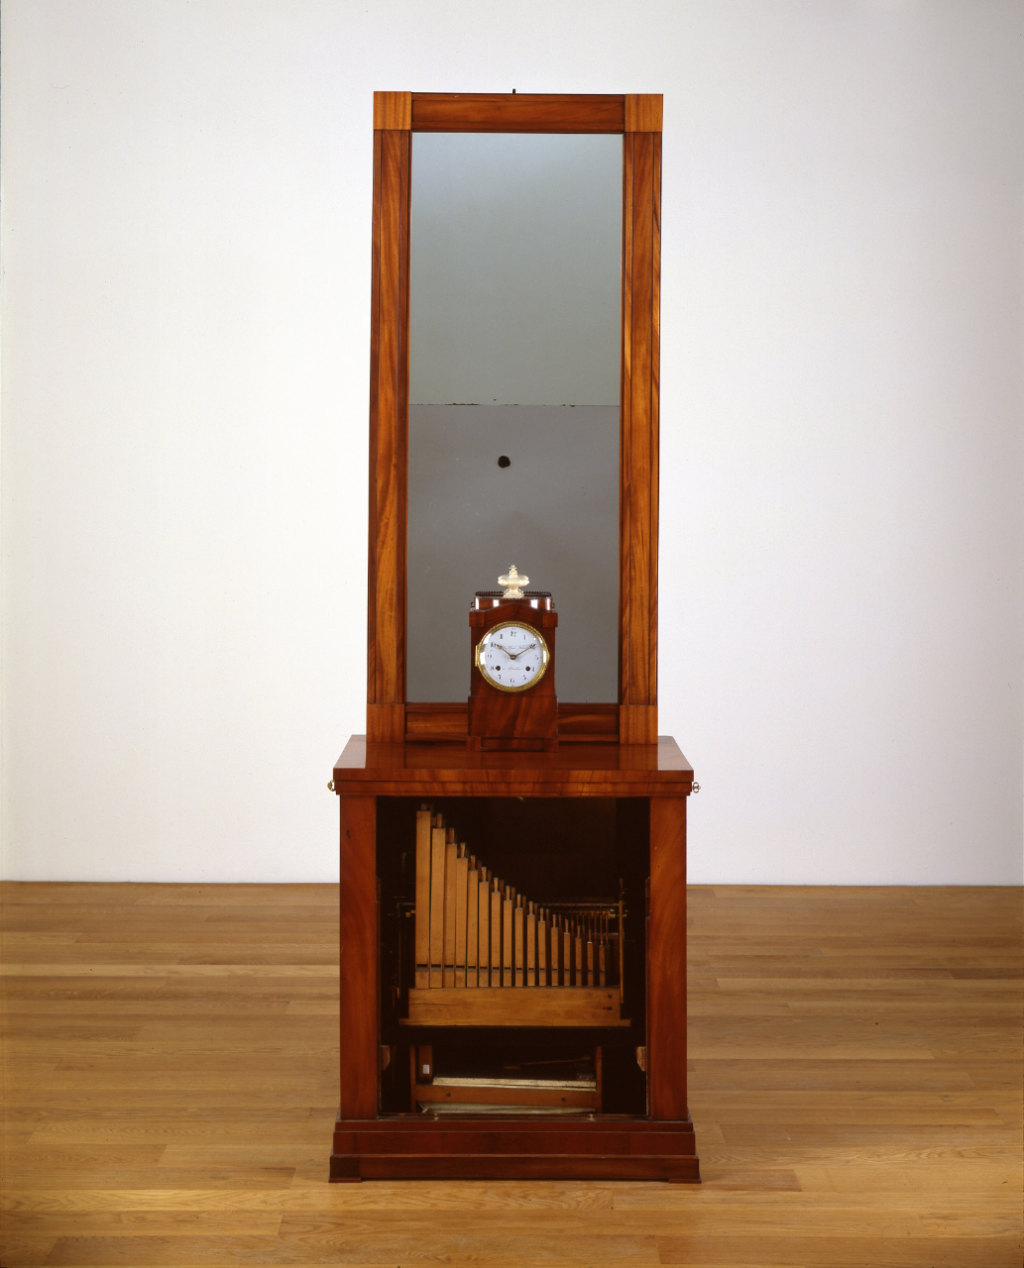 Spiegelschrank mit Flötenwerk und Uhr, vermutlich Berlin um 1800, MMA-71760